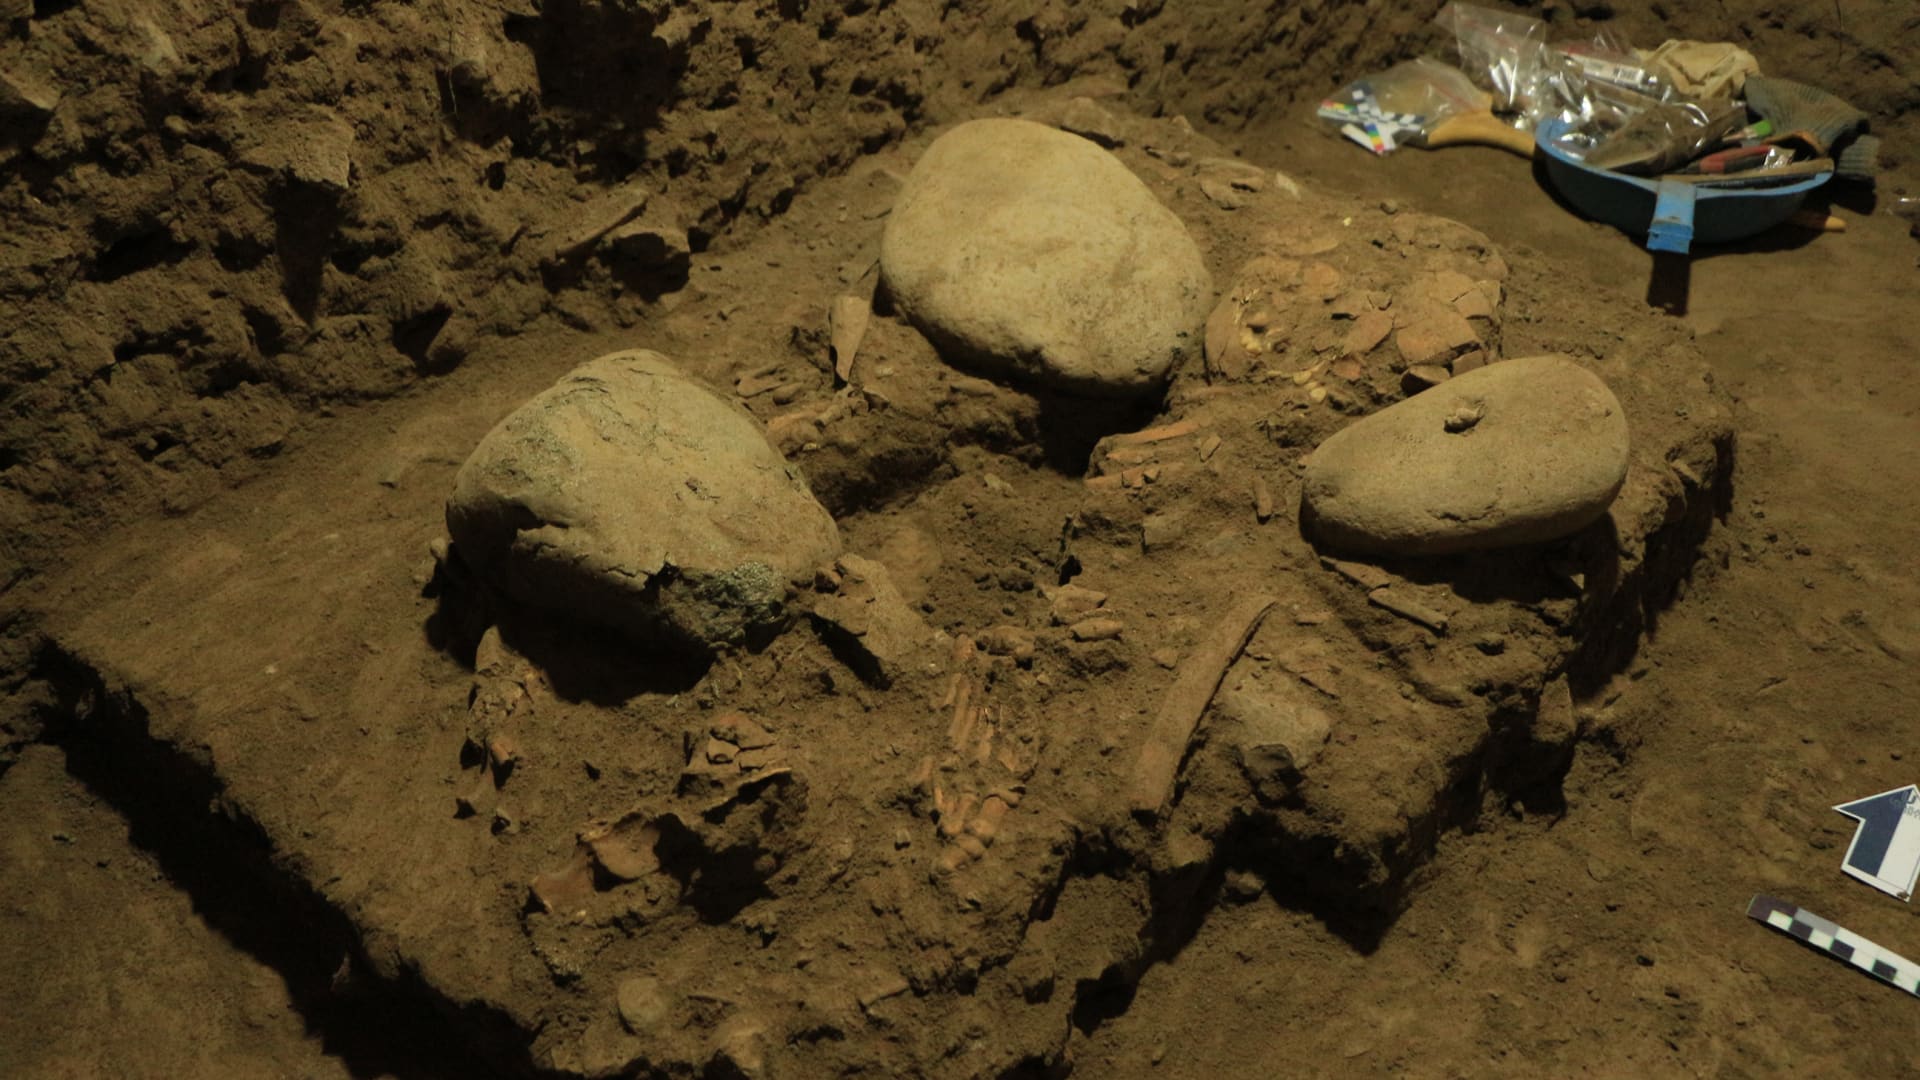 الكشف عن مجموعة من البشر لم تكن معروفة من قبل بفضل حمض نووي من عظام مراهقة في جزيرة إندونيسية